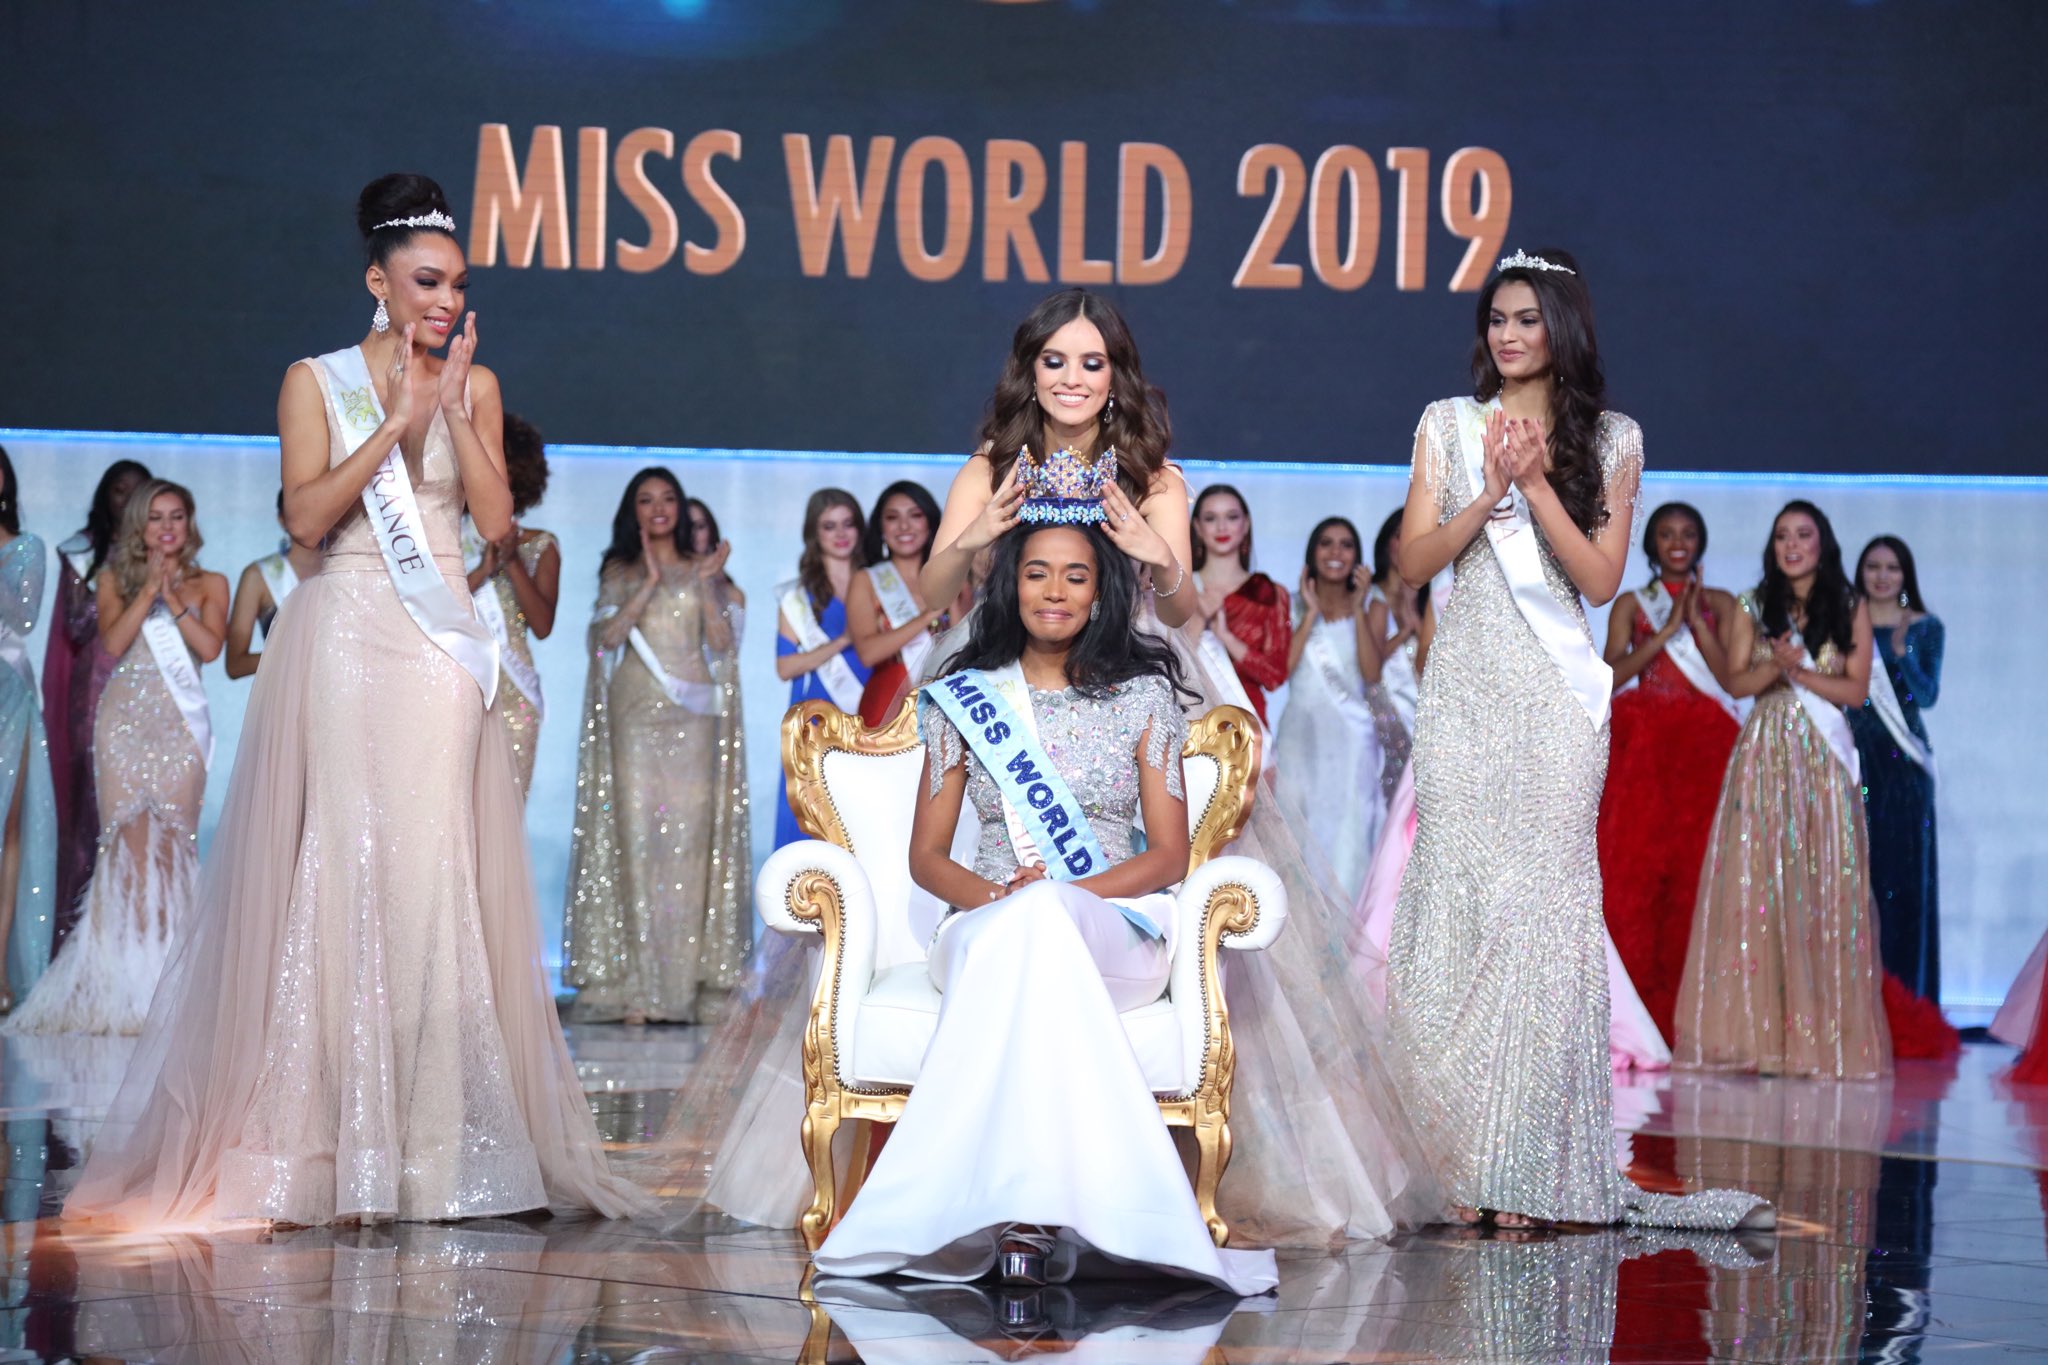 Miss World 2019, Toni-Ann Singh, Suman Rao, Indo-Carribean, Jamaica